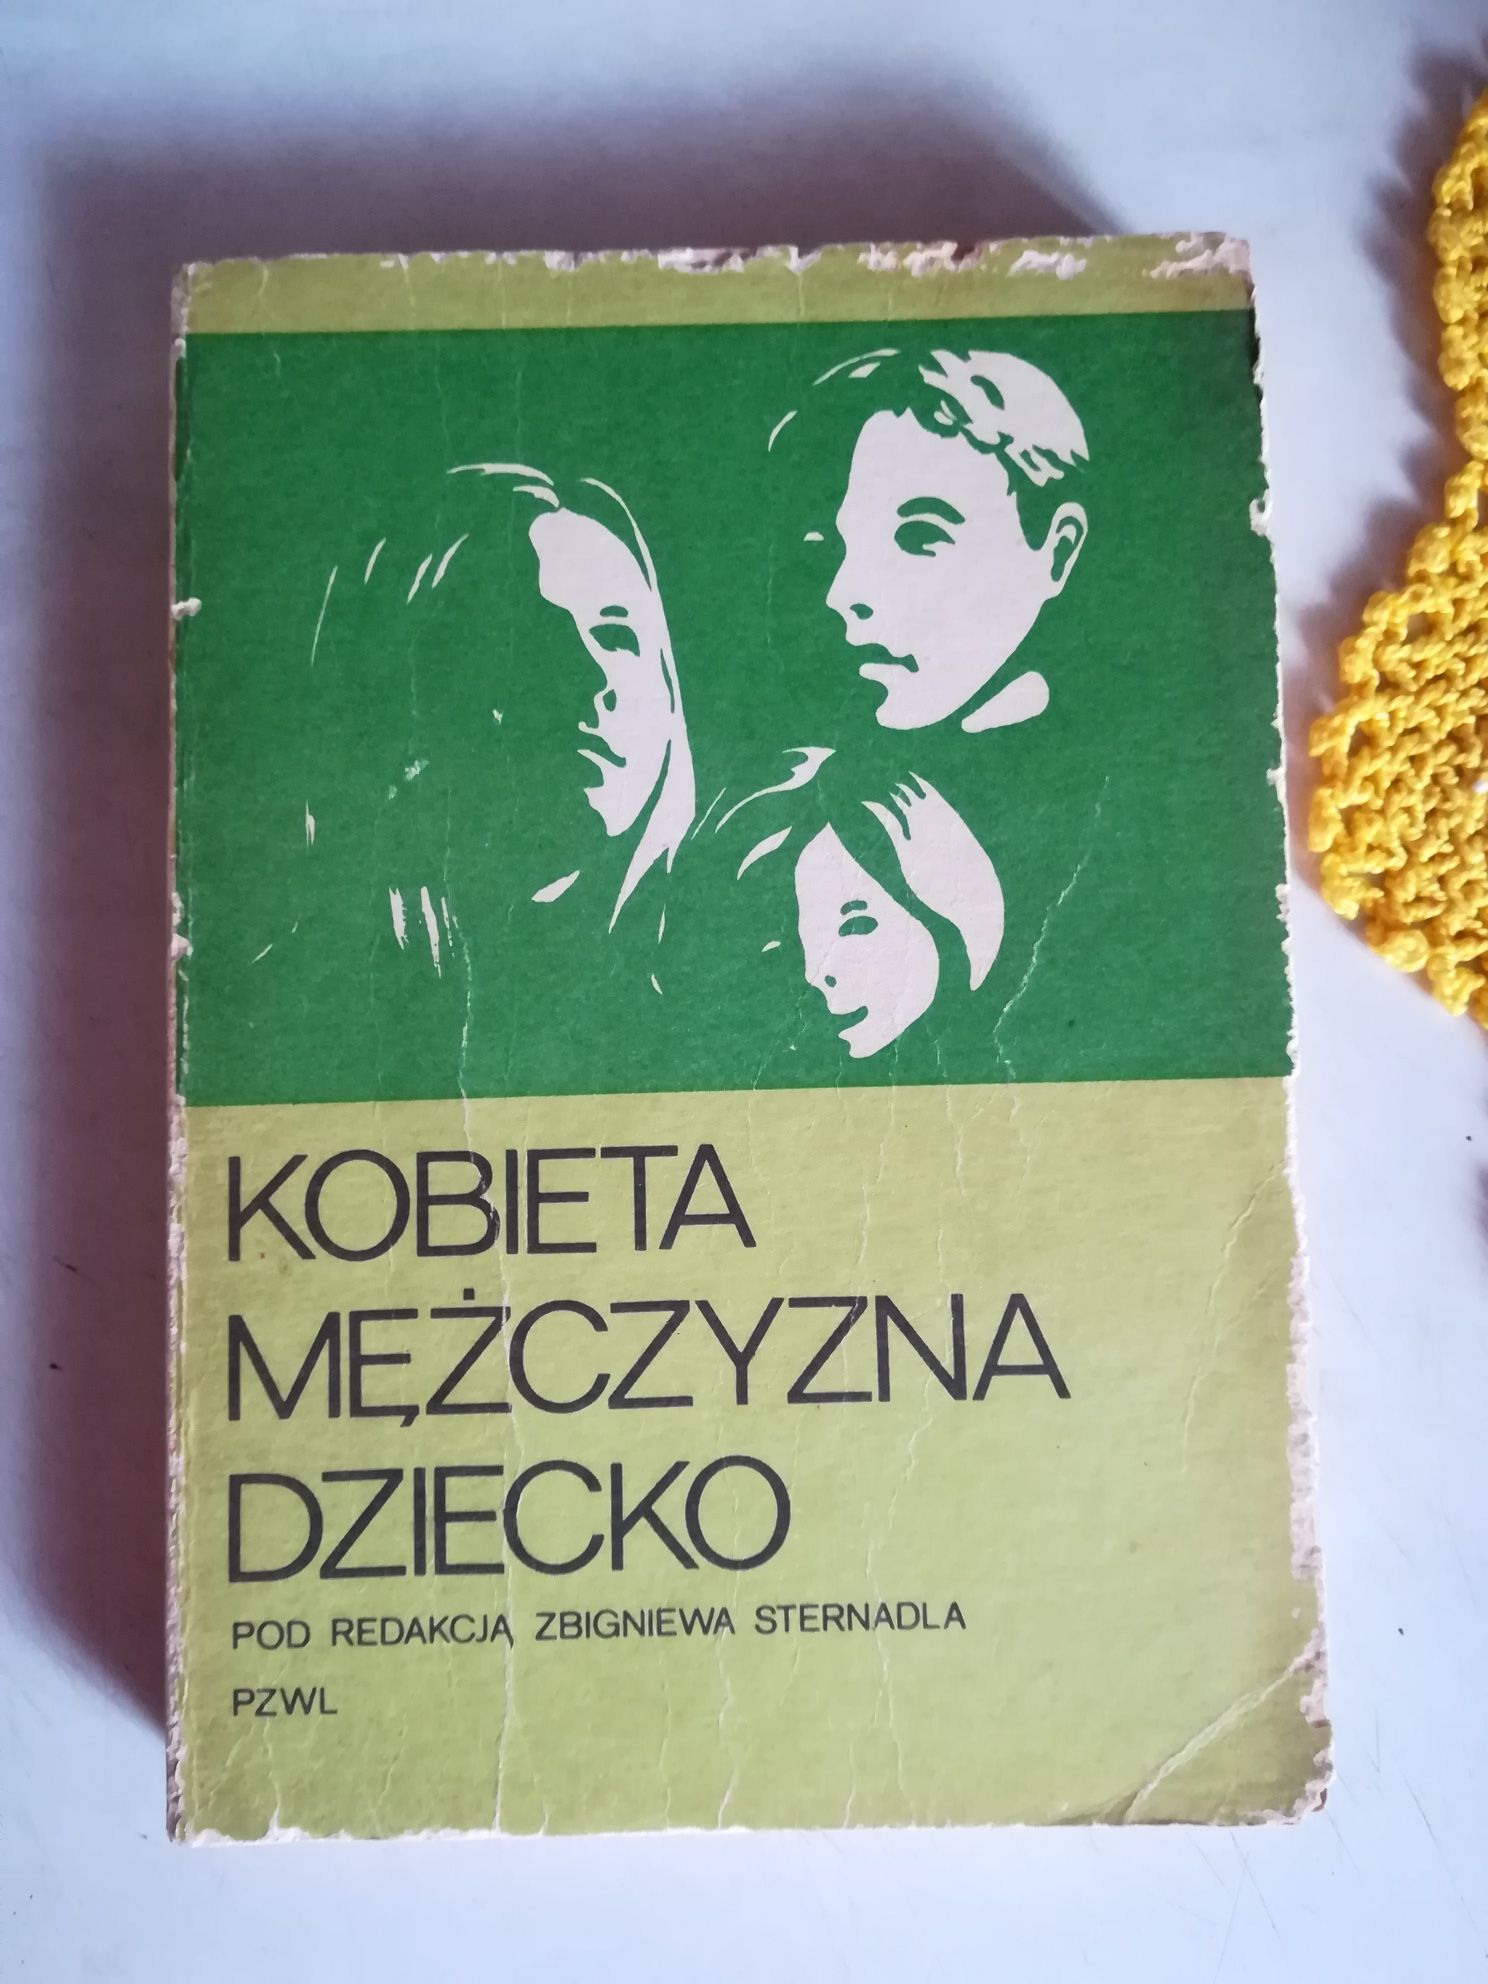 Książka - Kobieta mężczyzna dziecko - Zbigniew Sternadla - 1984 rok